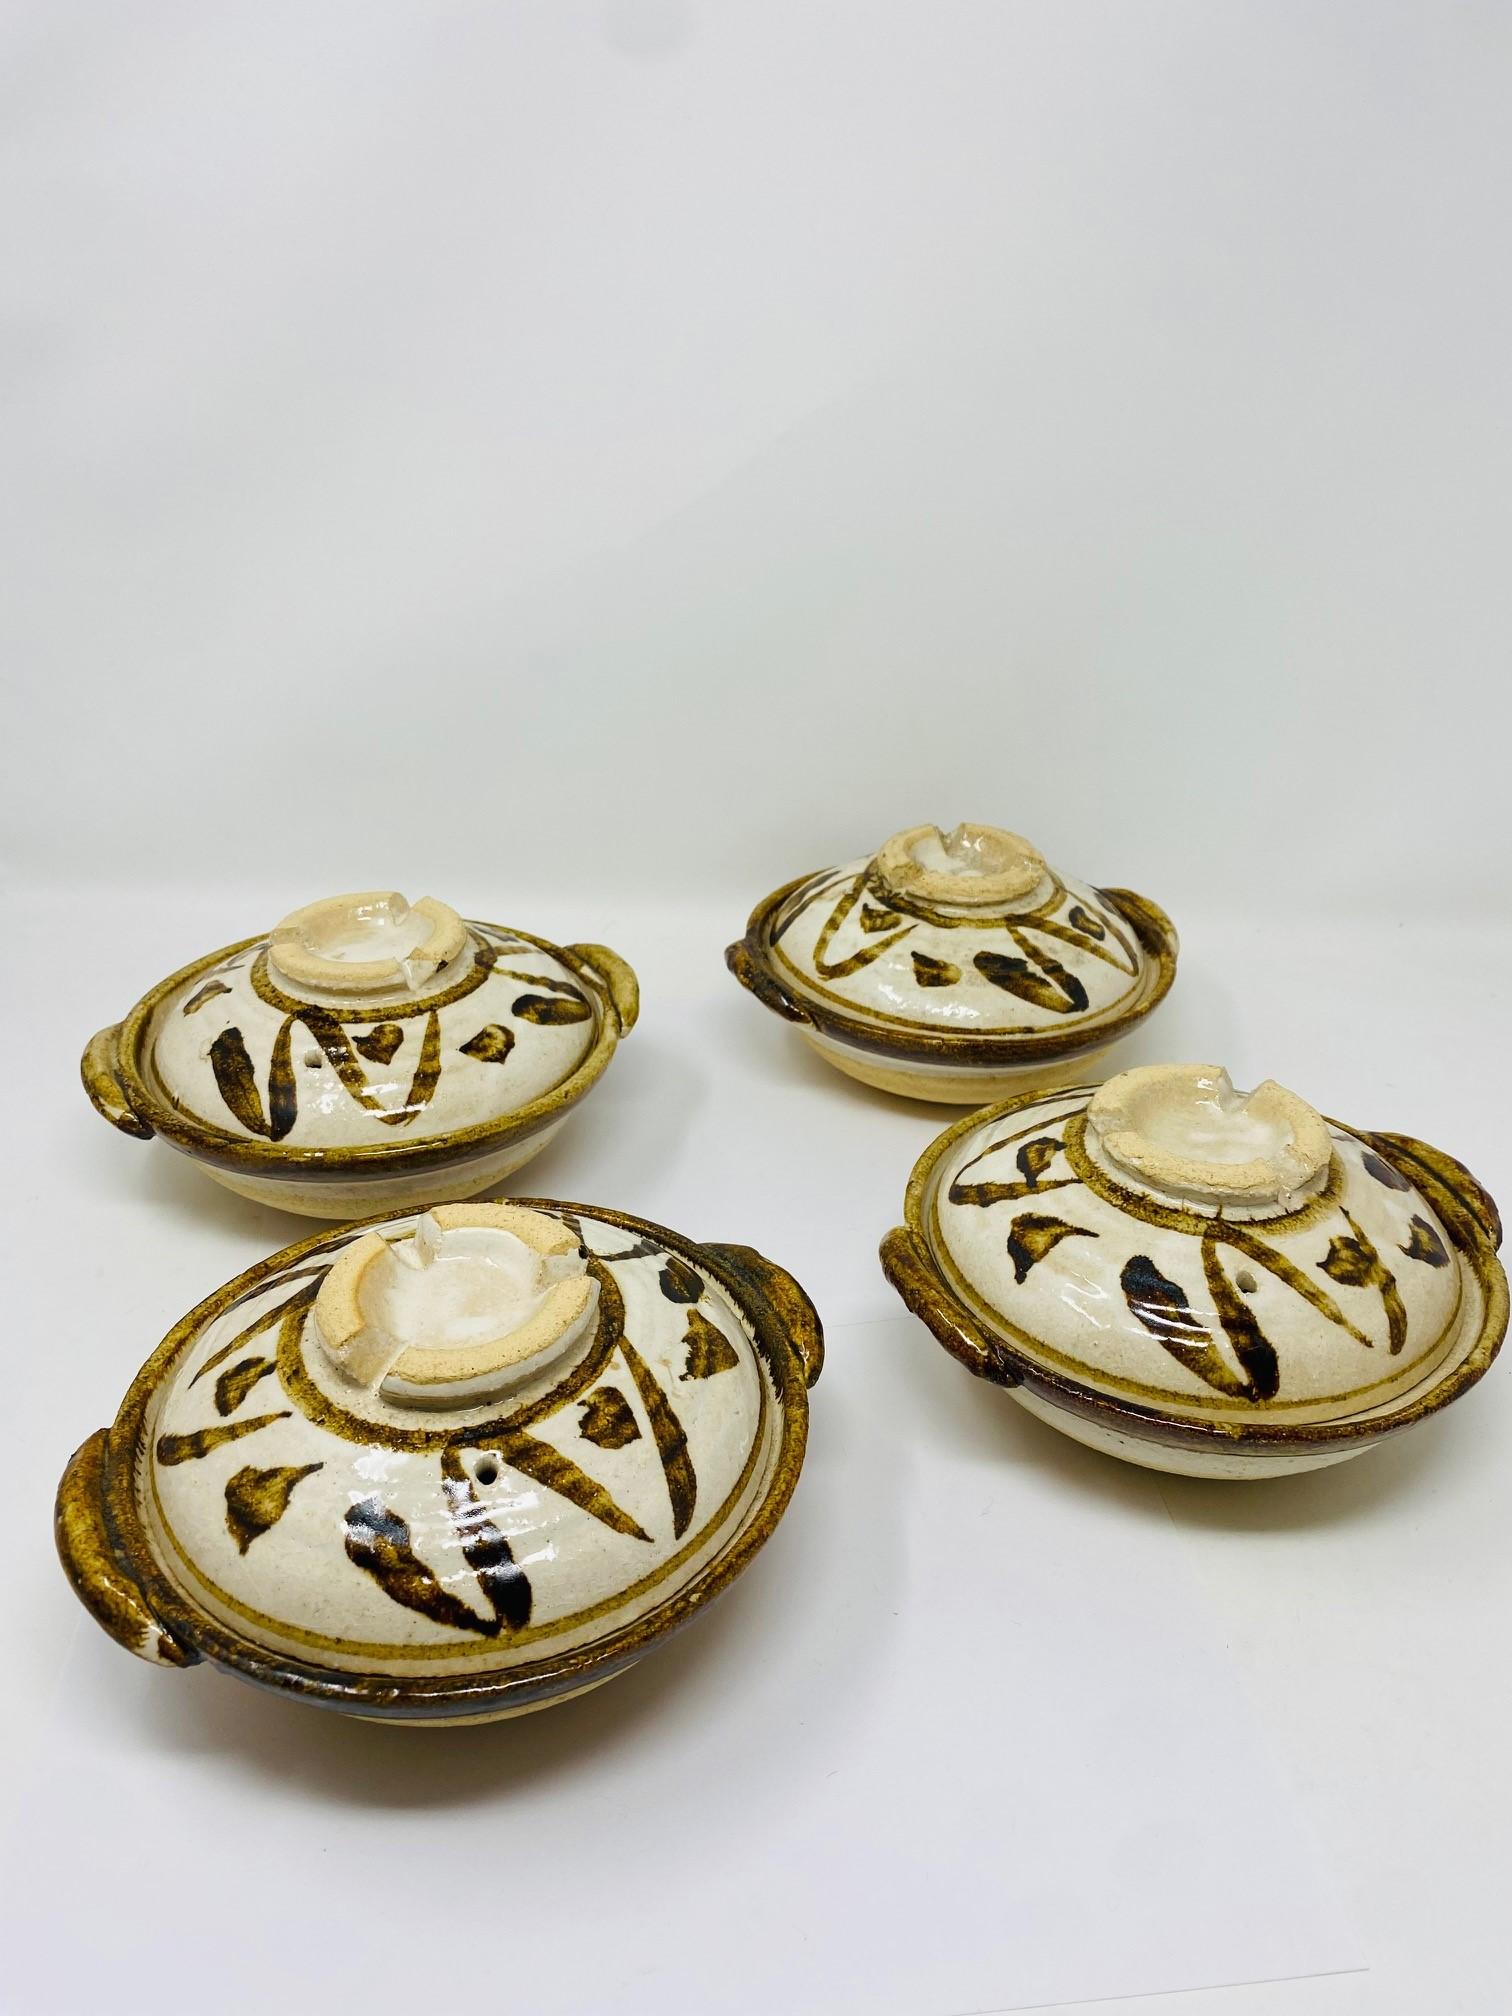 Magnifique ensemble de 2 bols couverts vintage de studio pottery.  Ces plats fabriqués à la main sont dotés de couvercles ventilés et de poignées d'épaule. Un motif abstrait peint à la main met en valeur la poterie émaillée beige naturel avec des